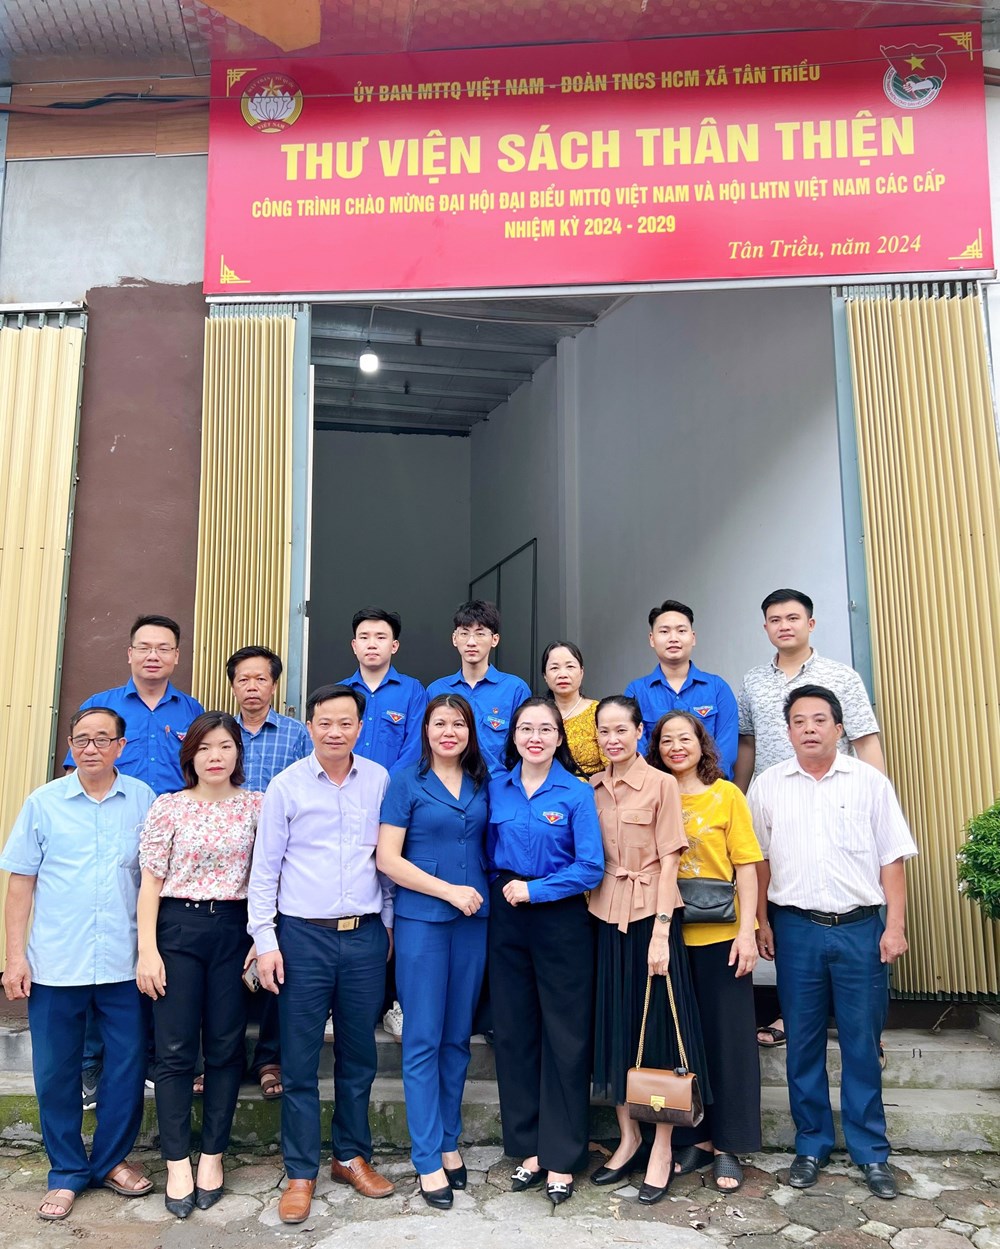 Huyện Thanh Trì, Hà Nội: Gắn biển công trình “Thư viện sách thân thiện” tại xã Tân Triều - ảnh 1